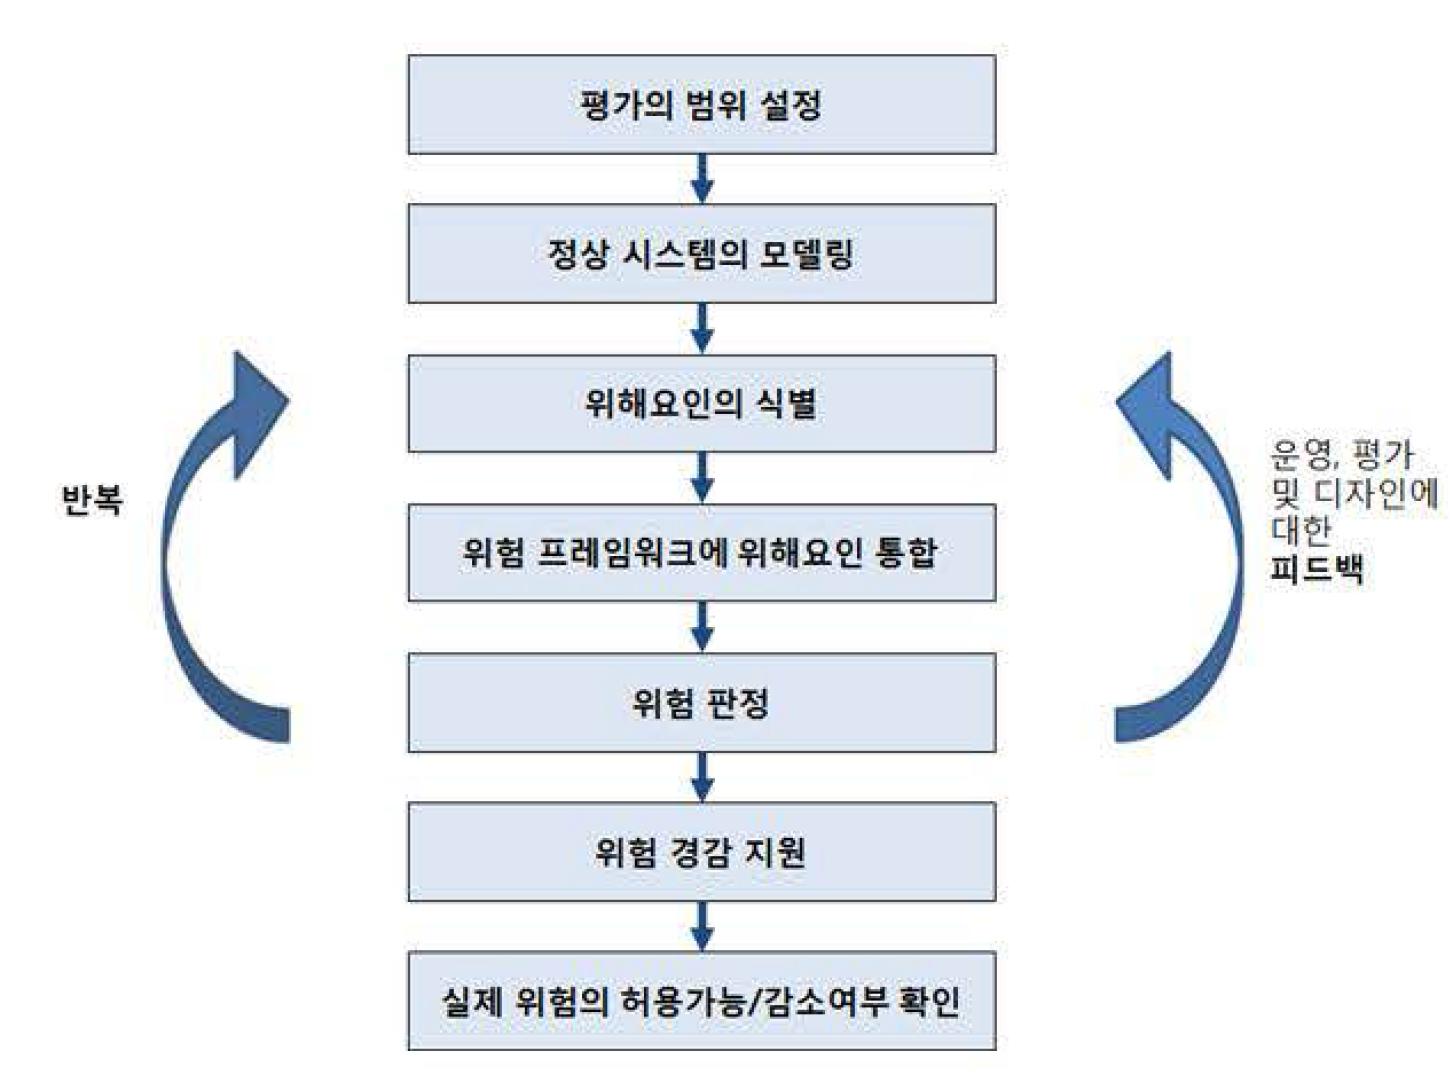 위험관리 8 단계 프로세스(ECAST 모델)